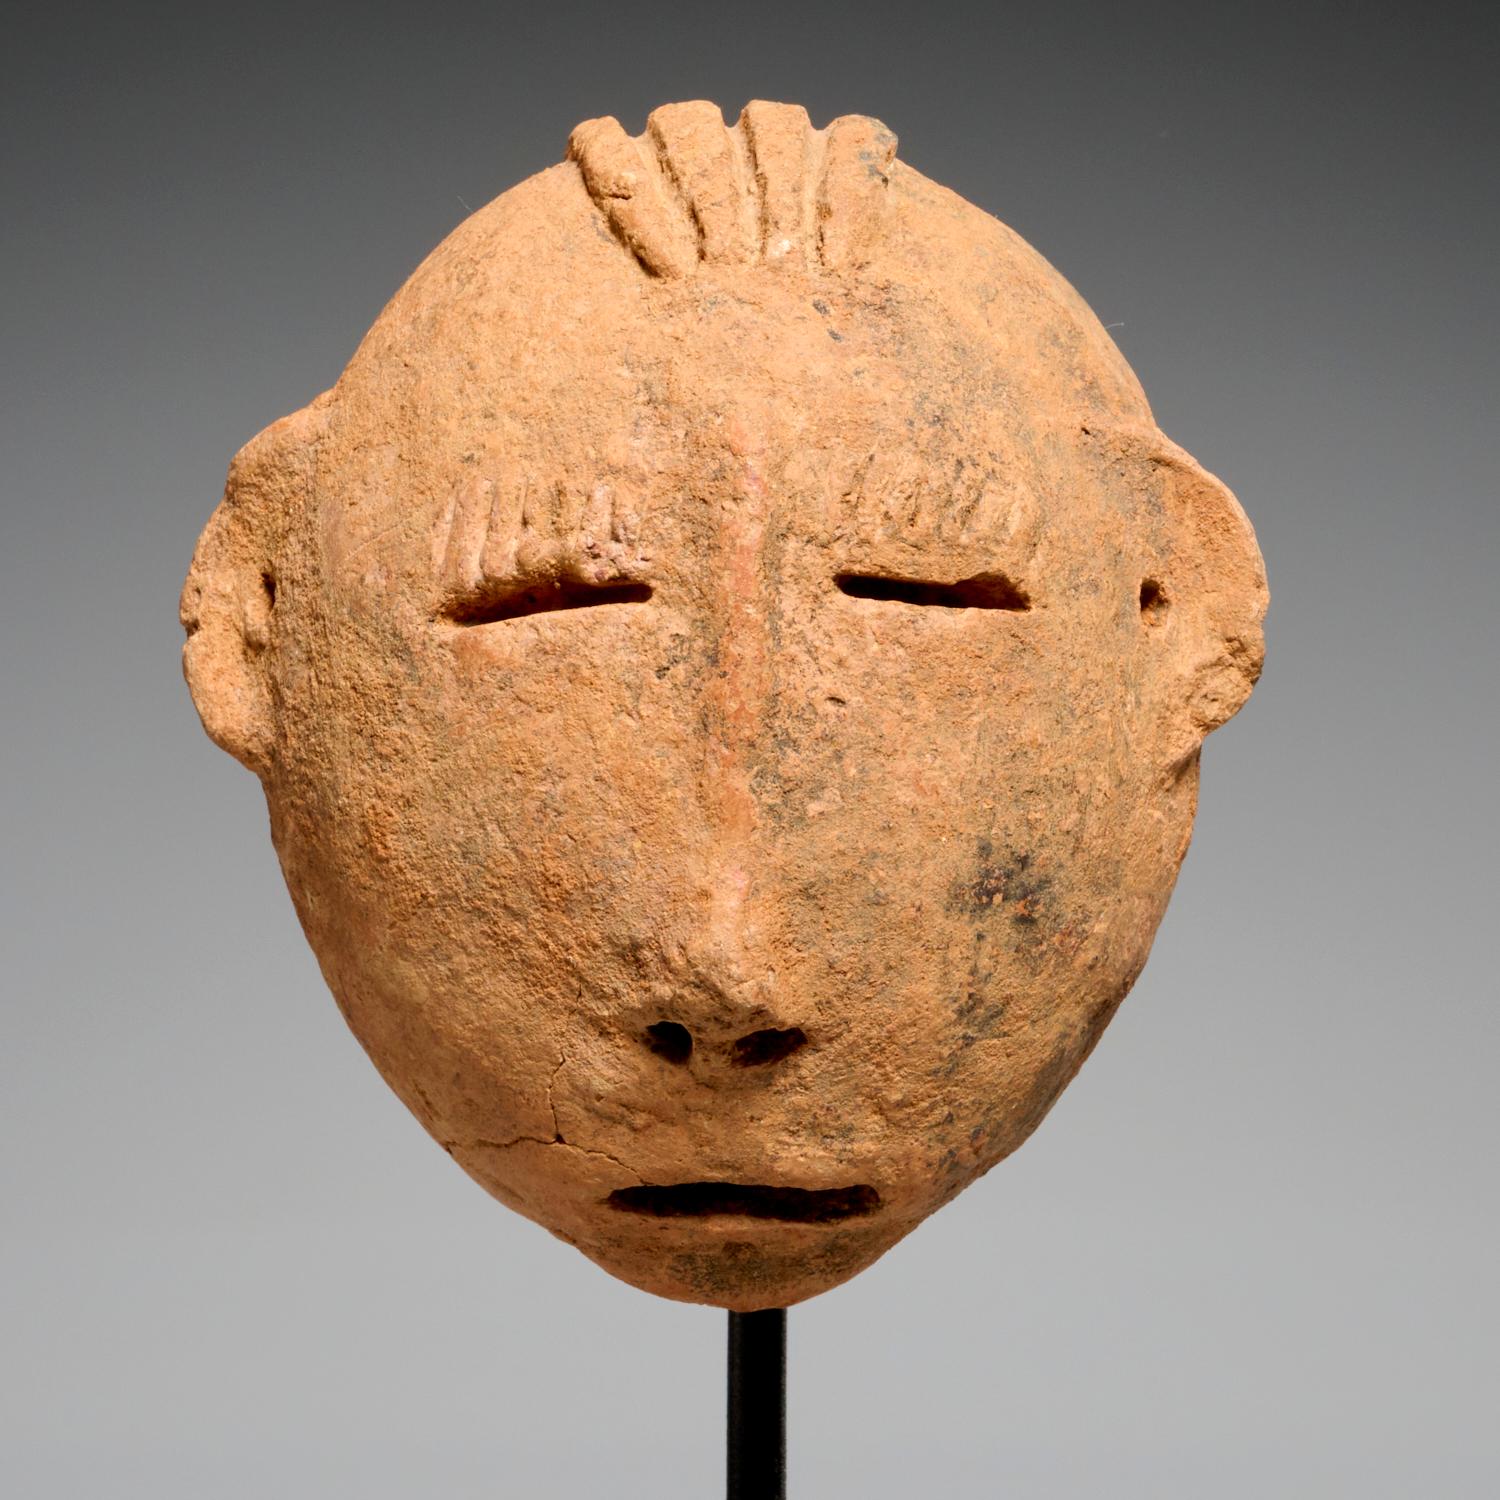 Têtes en argile cuite de Bura, probablement du IIIe au Xe siècle. CE, Niger, peuples Bura. Il s'agit d'exemples très expressifs sur des montures personnalisées, les plus grandes présentant des dépôts de manganèse.

Entre le IIIe et le Xe siècle, les